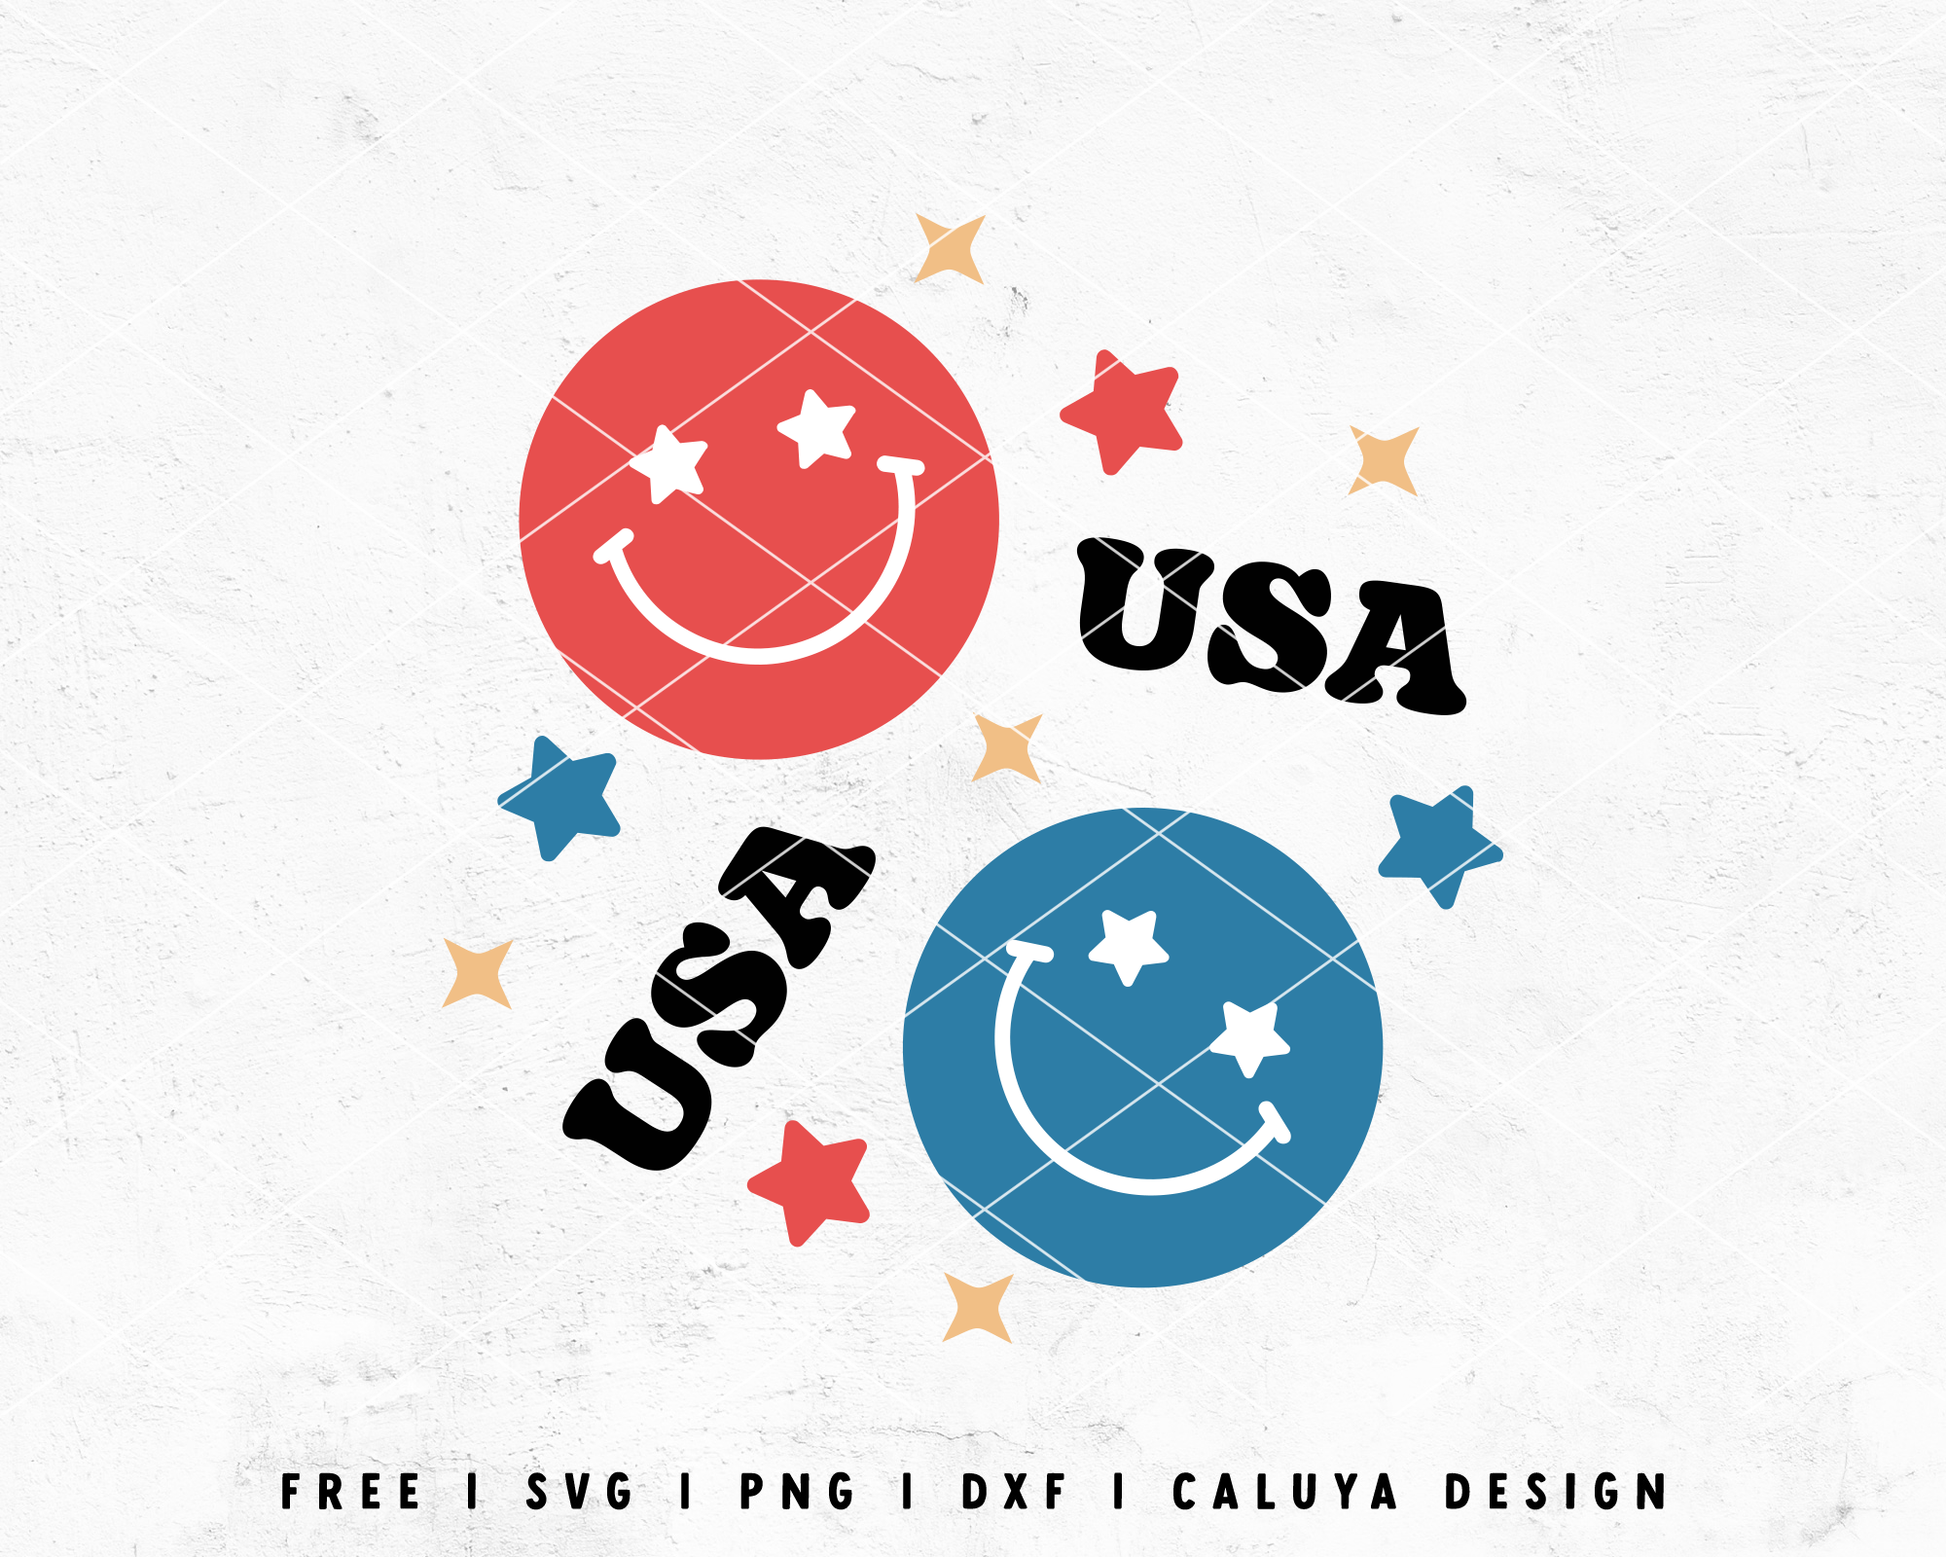 FREE July 4th SVG | Retro America SVG Cut File for Cricut, Cameo Silhouette | Free SVG Cut File